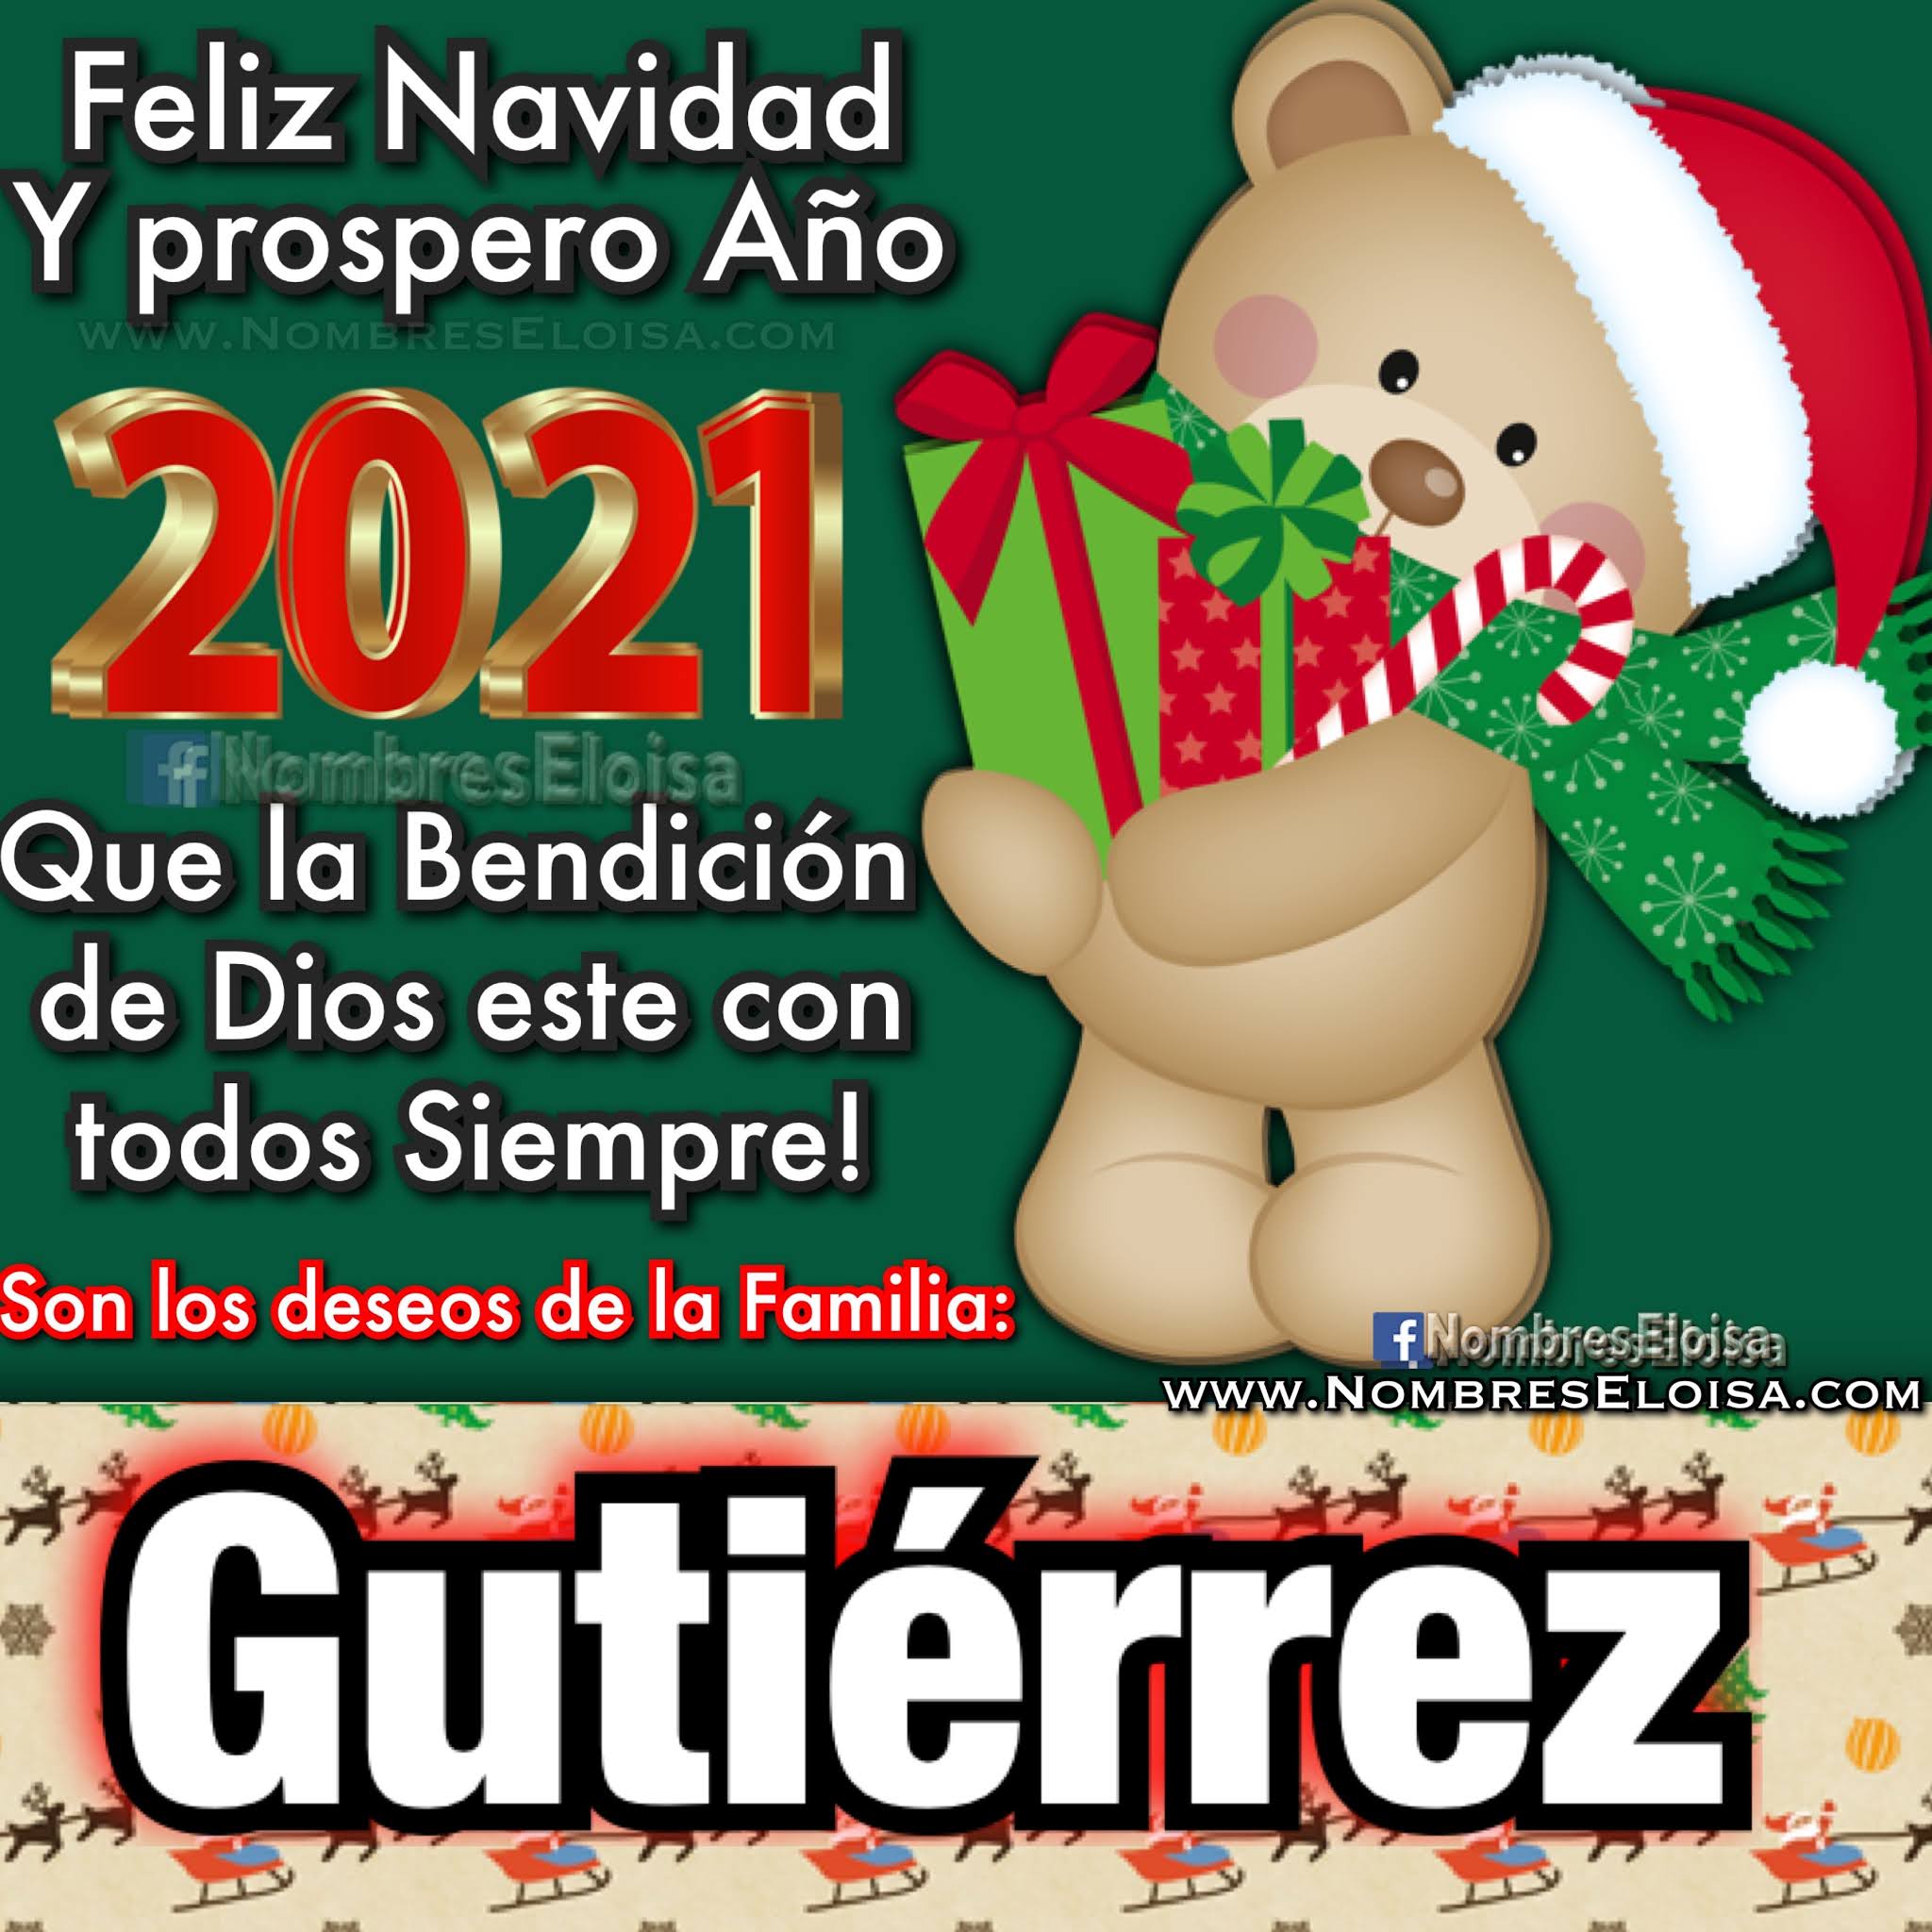 NombresEloisa.com: Feliz Navidad y próspero año nuevo (4)